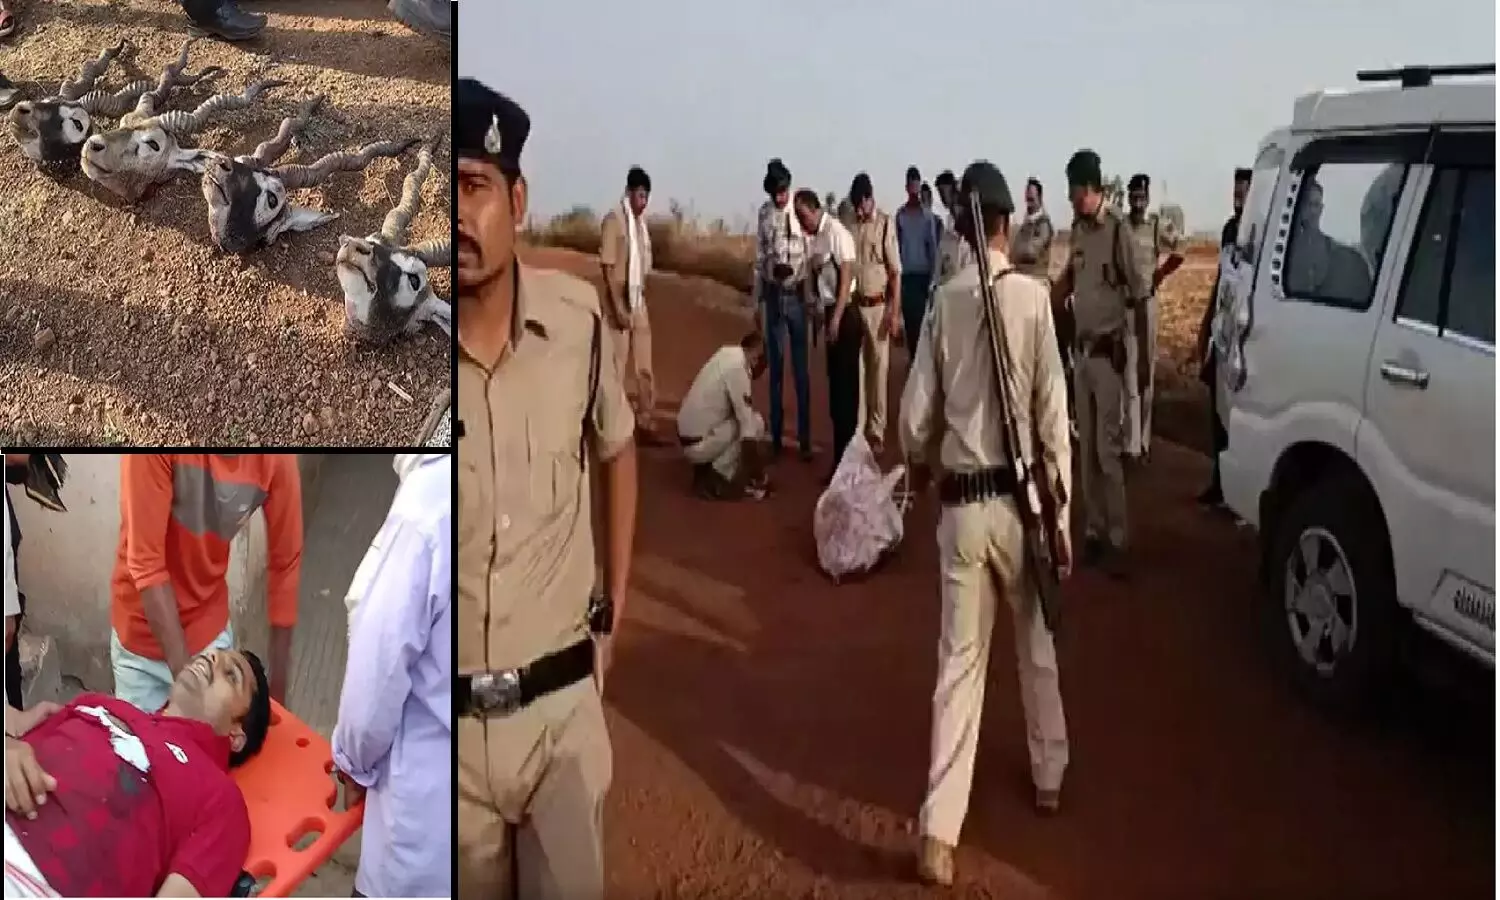 मध्य प्रदेश: गुना में काले हिरण के शिकारियों ने 3 पुलिसकर्मियों की हत्या कर दी, एक शिकारी भी मारा गया